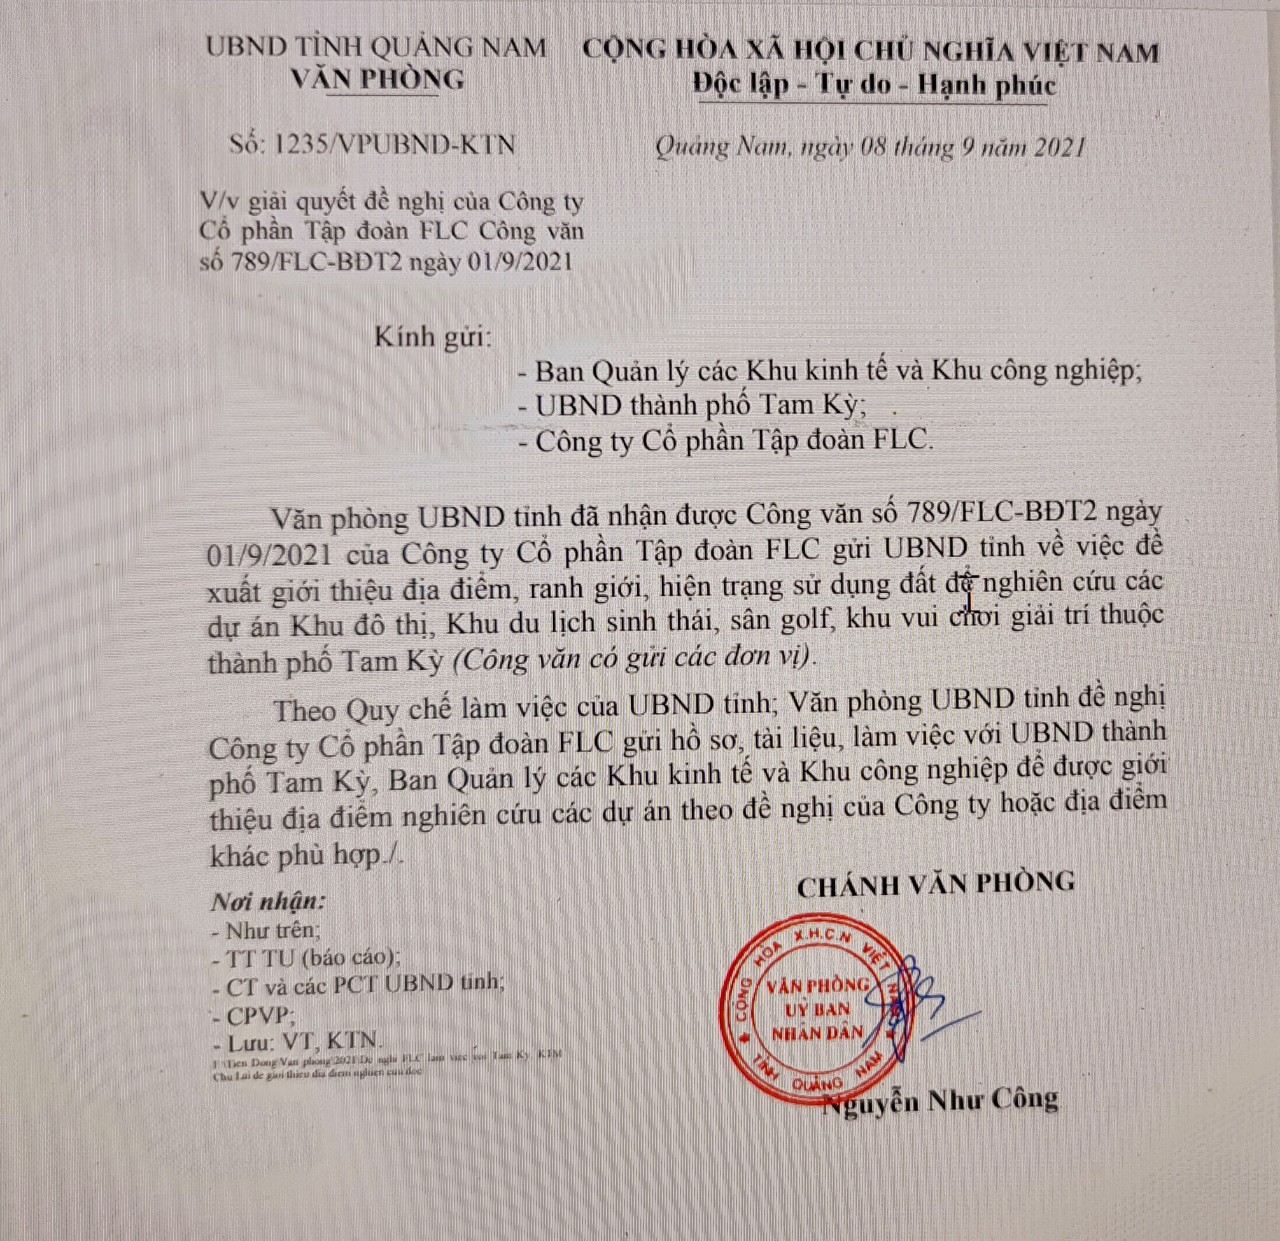 UBND tỉnh Quảng Nam vừa ban hành Công văn số 1235/VPUBND-KTN về việc giải quyết đề nghị của Công ty Cổ phần Tập đoàn FLC